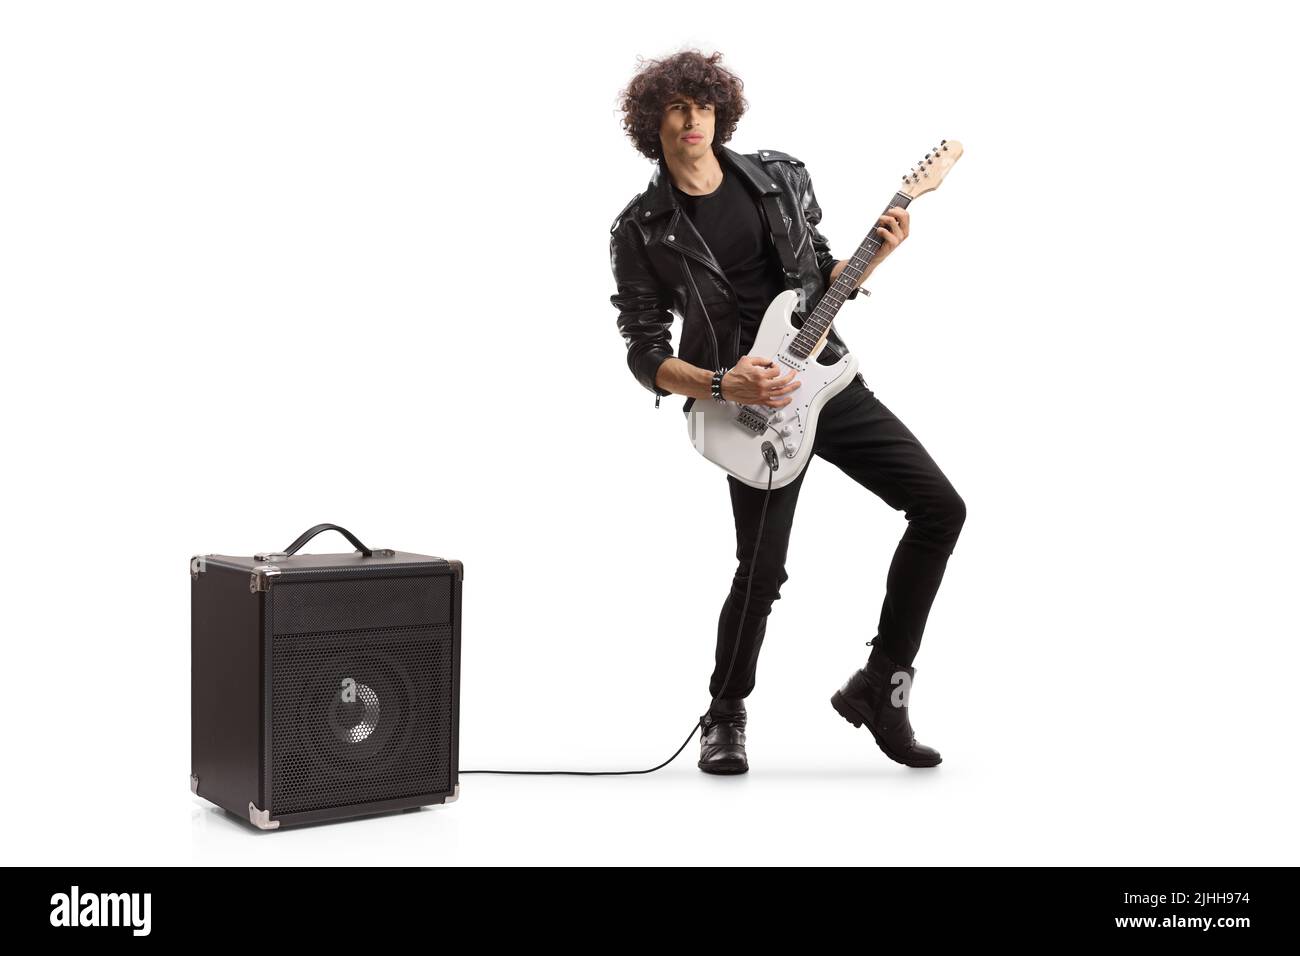 In voller Länge Porträt eines jungen Rockmusikers, der eine Gitarre spielt, die in einen auf weißem Hintergrund isolierten Verstärker eingesteckt ist Stockfoto